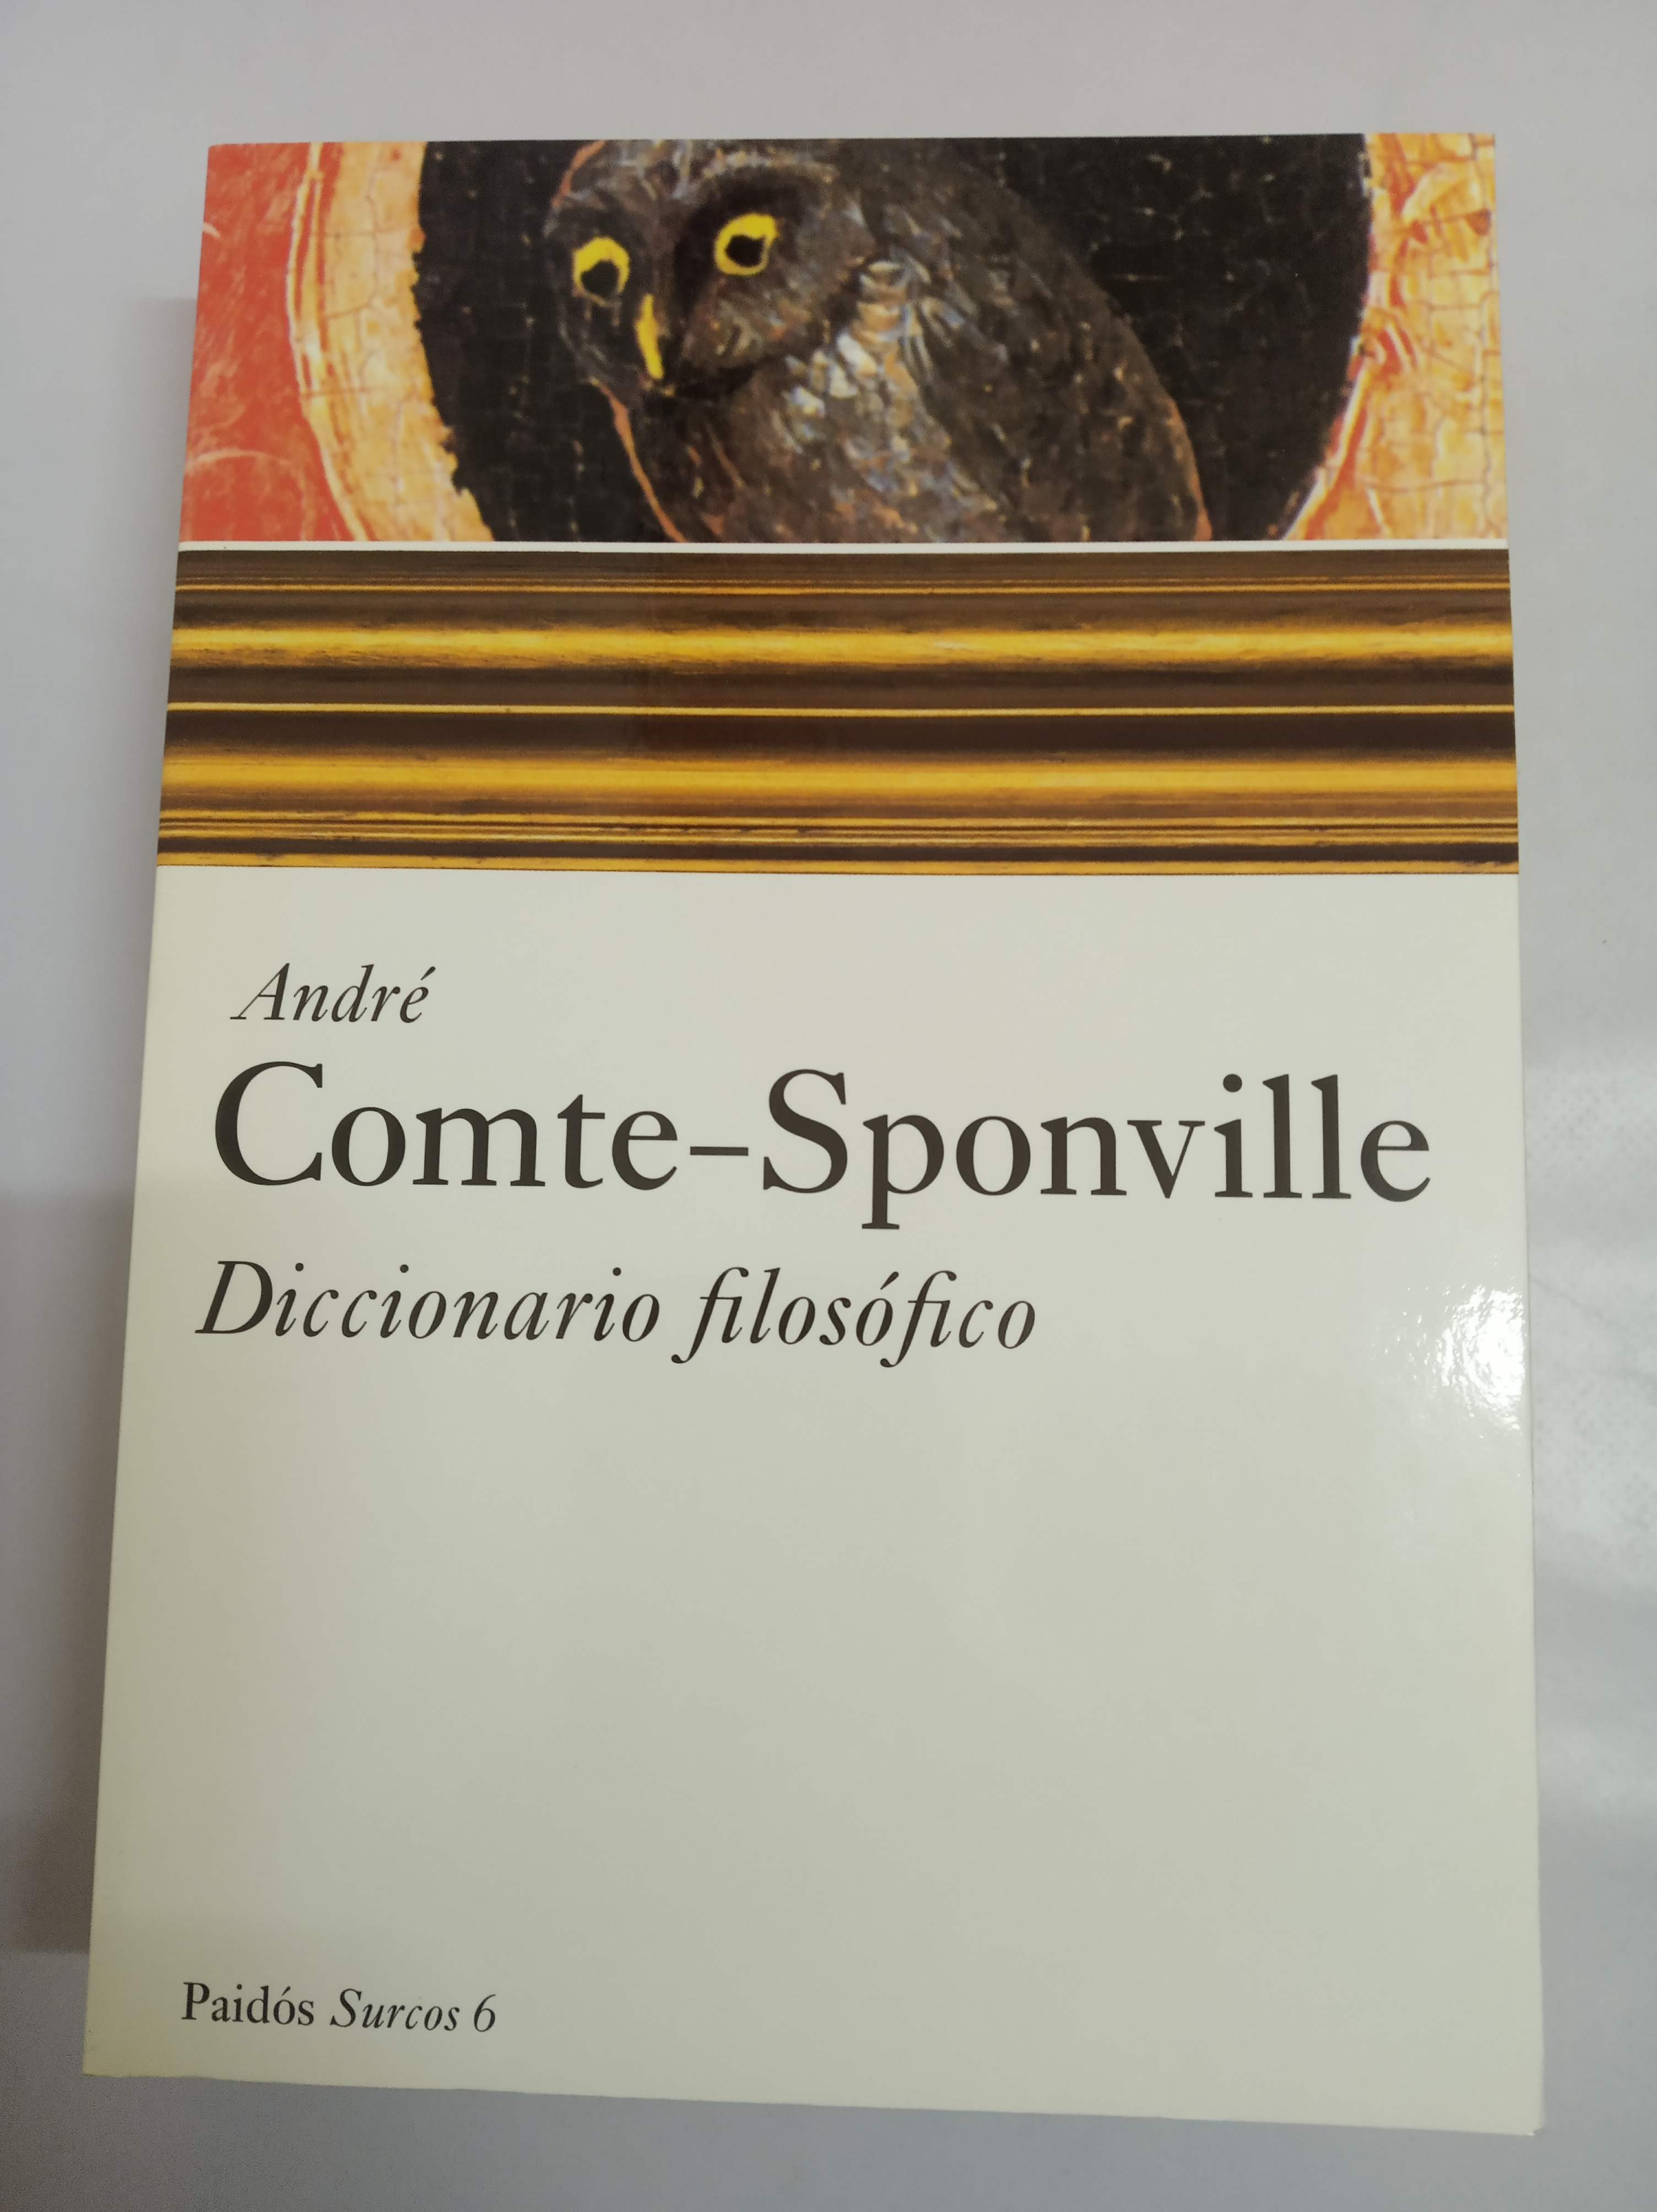 Diccionario filosofico - Comte-Sponville, Andre